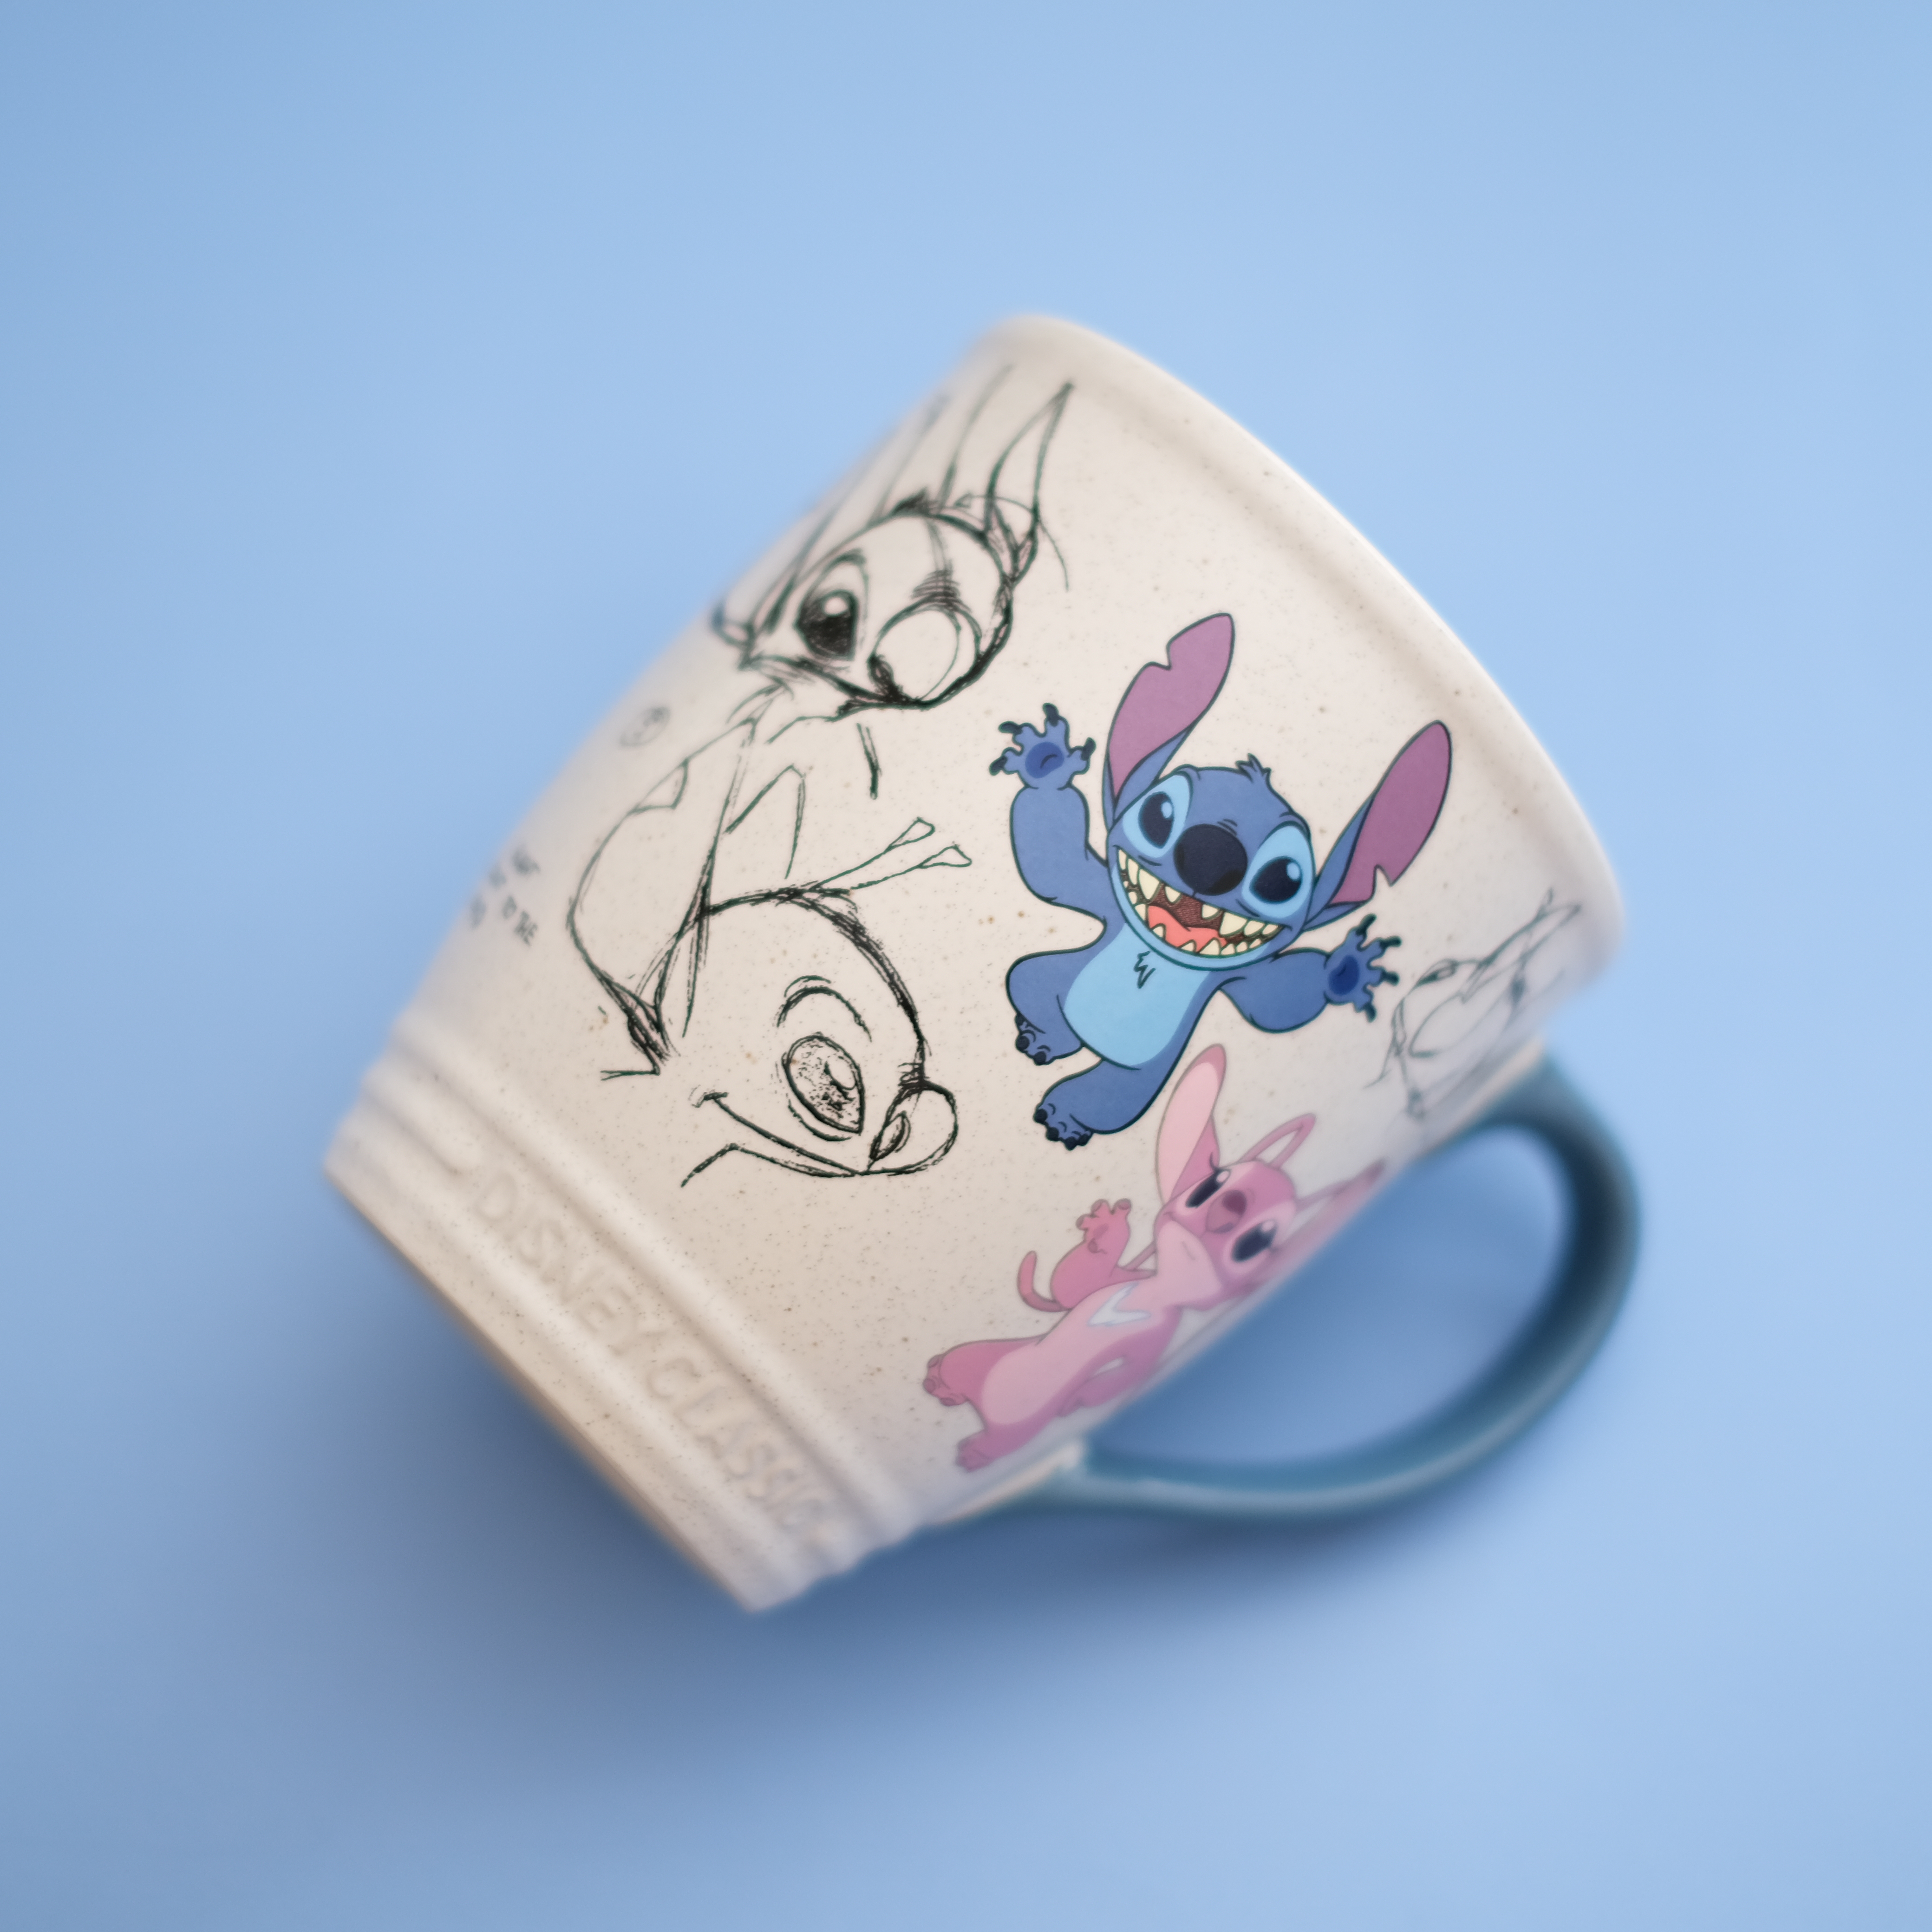  Stitch Sketch Classic Mug  